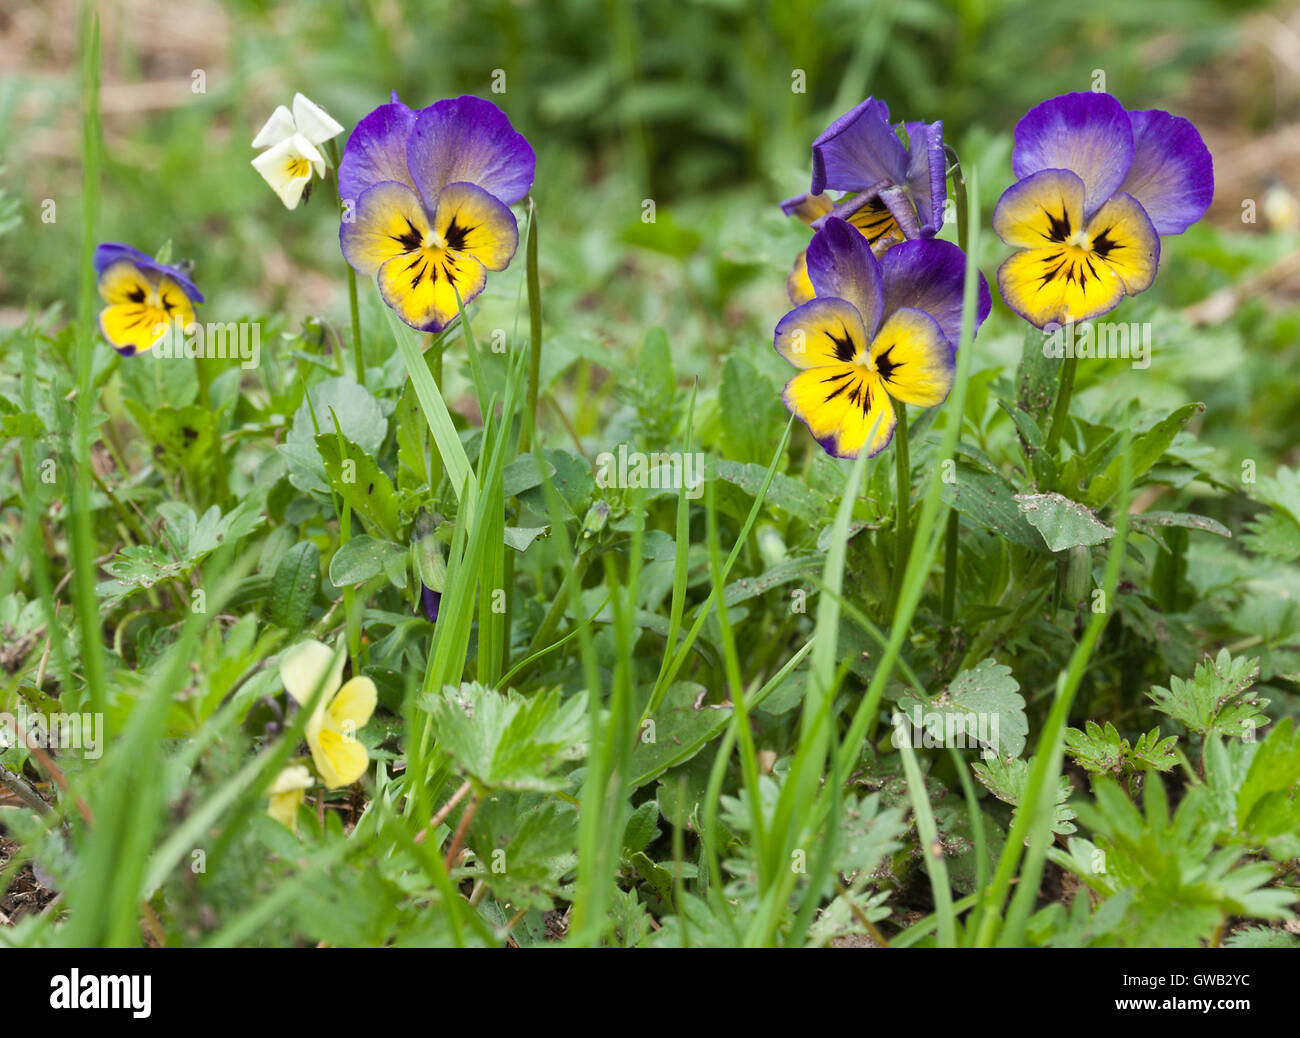 Botanischer Garten Pflanzen Natur Bild: Stiefmütterchen (Viola Tricolor, Viola Cornuta) Blumen Closeup unter den grünen Pflanzen Stockfoto